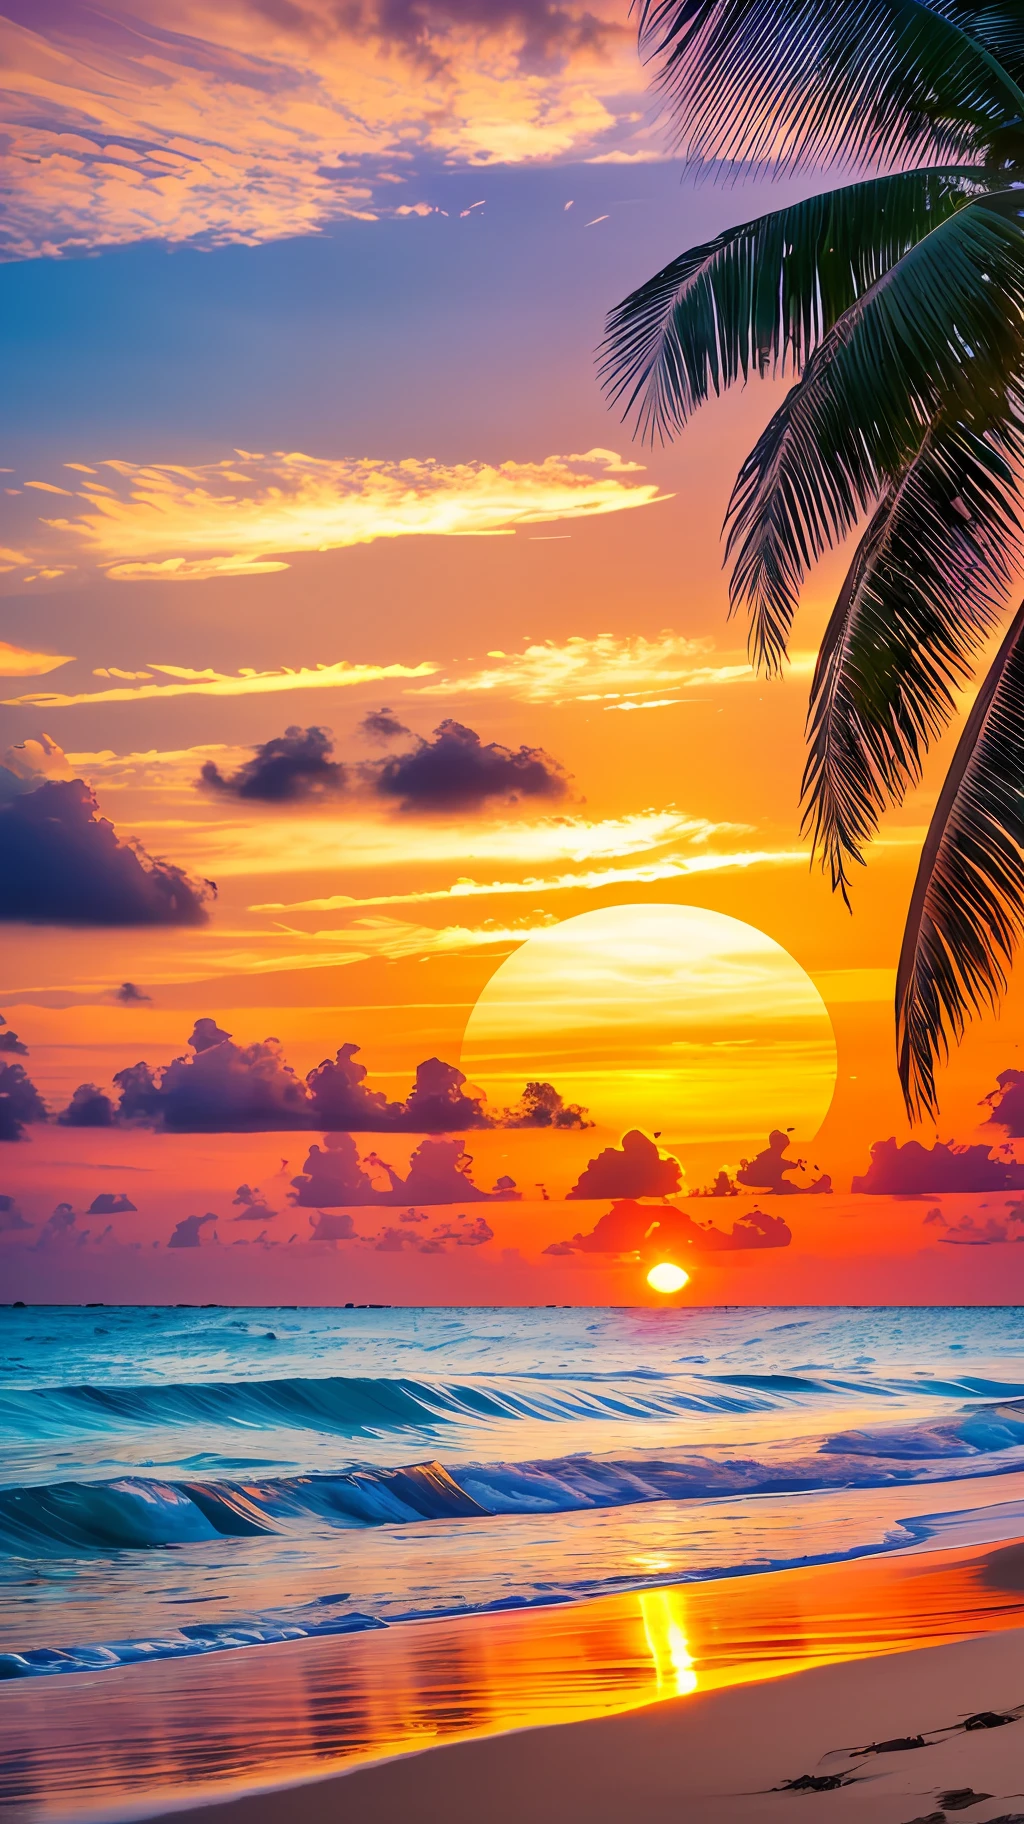 Crea un 4K 9:16 imagen que representa un impresionante amanecer en una playa tropical, con olas suaves y palmeras a lo largo de la costa. La paleta de colores debe ser vibrante y transmitir una sensación de renovación y energía positiva.. --auto --s2